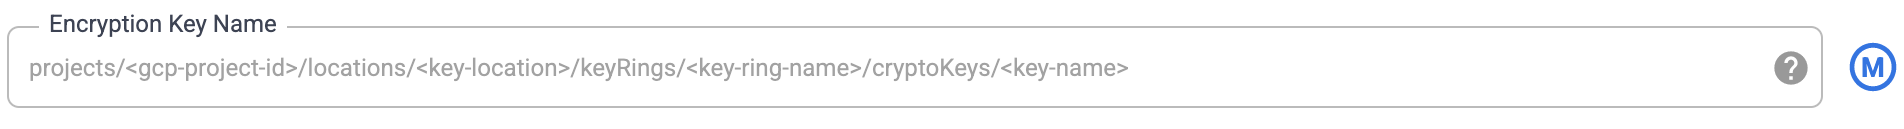 Nombres de las claves de encriptación